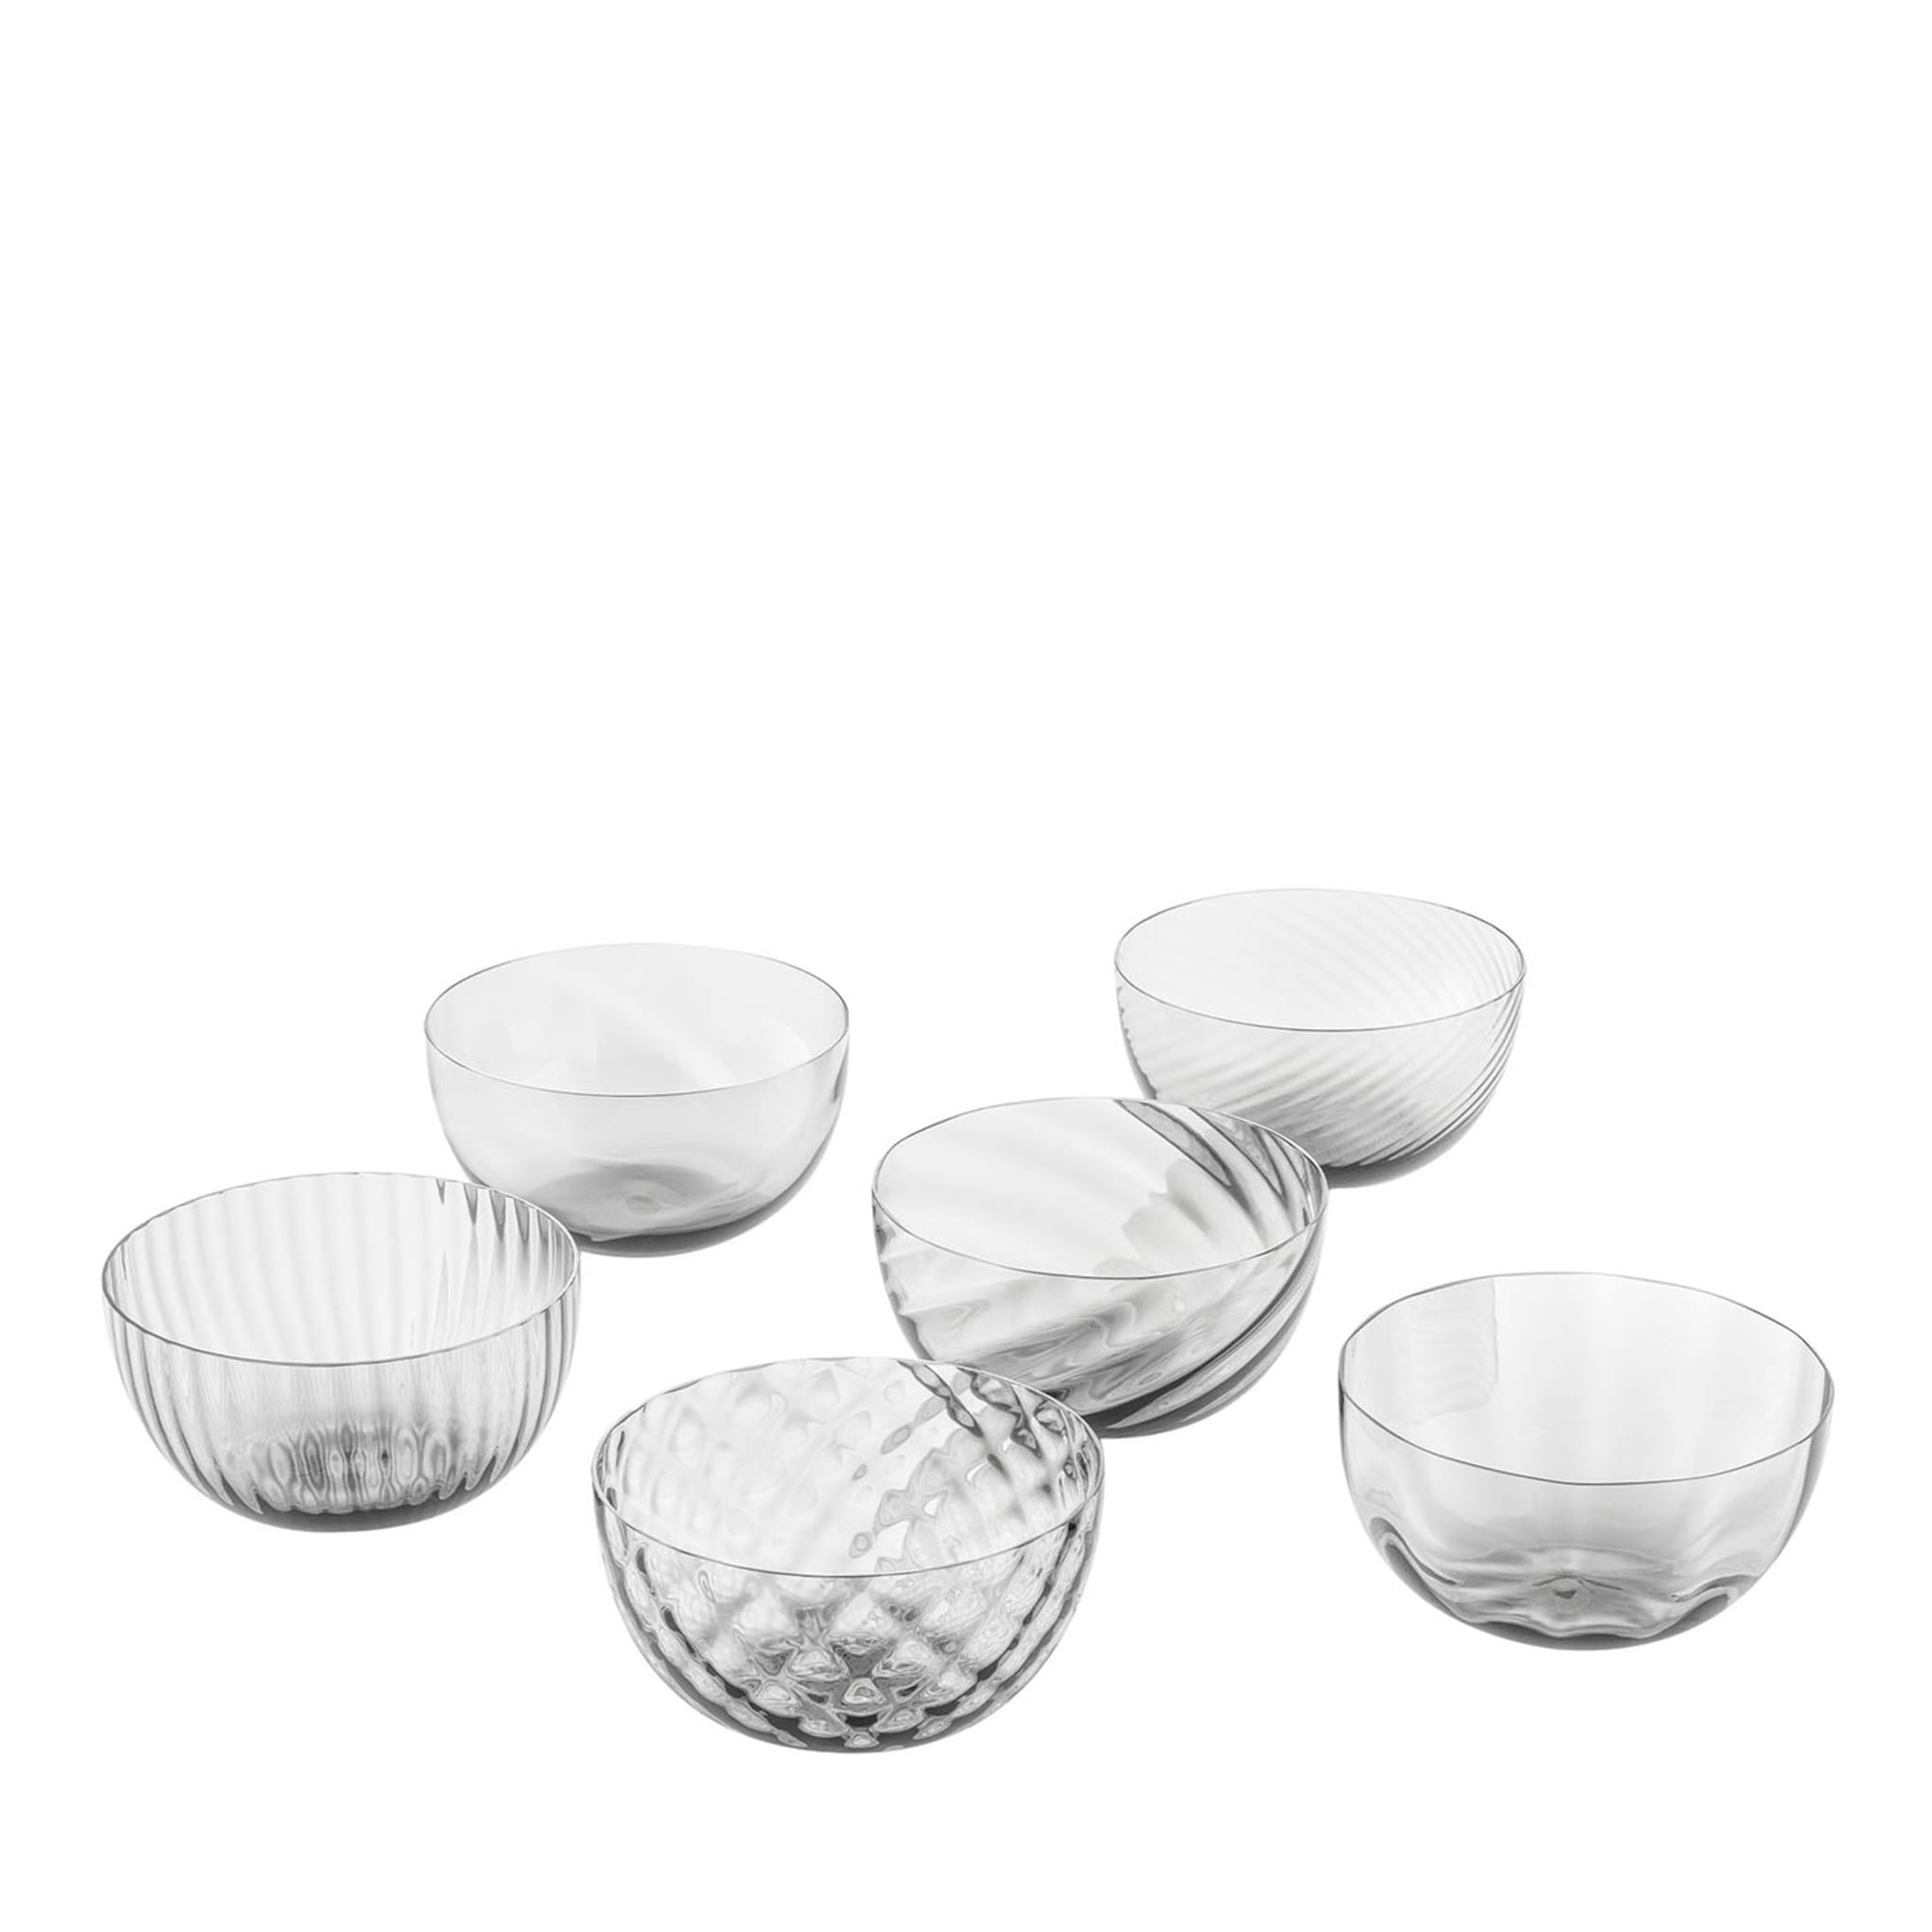 Idra Transparent Set of 6 Assorted Bowls - Main view